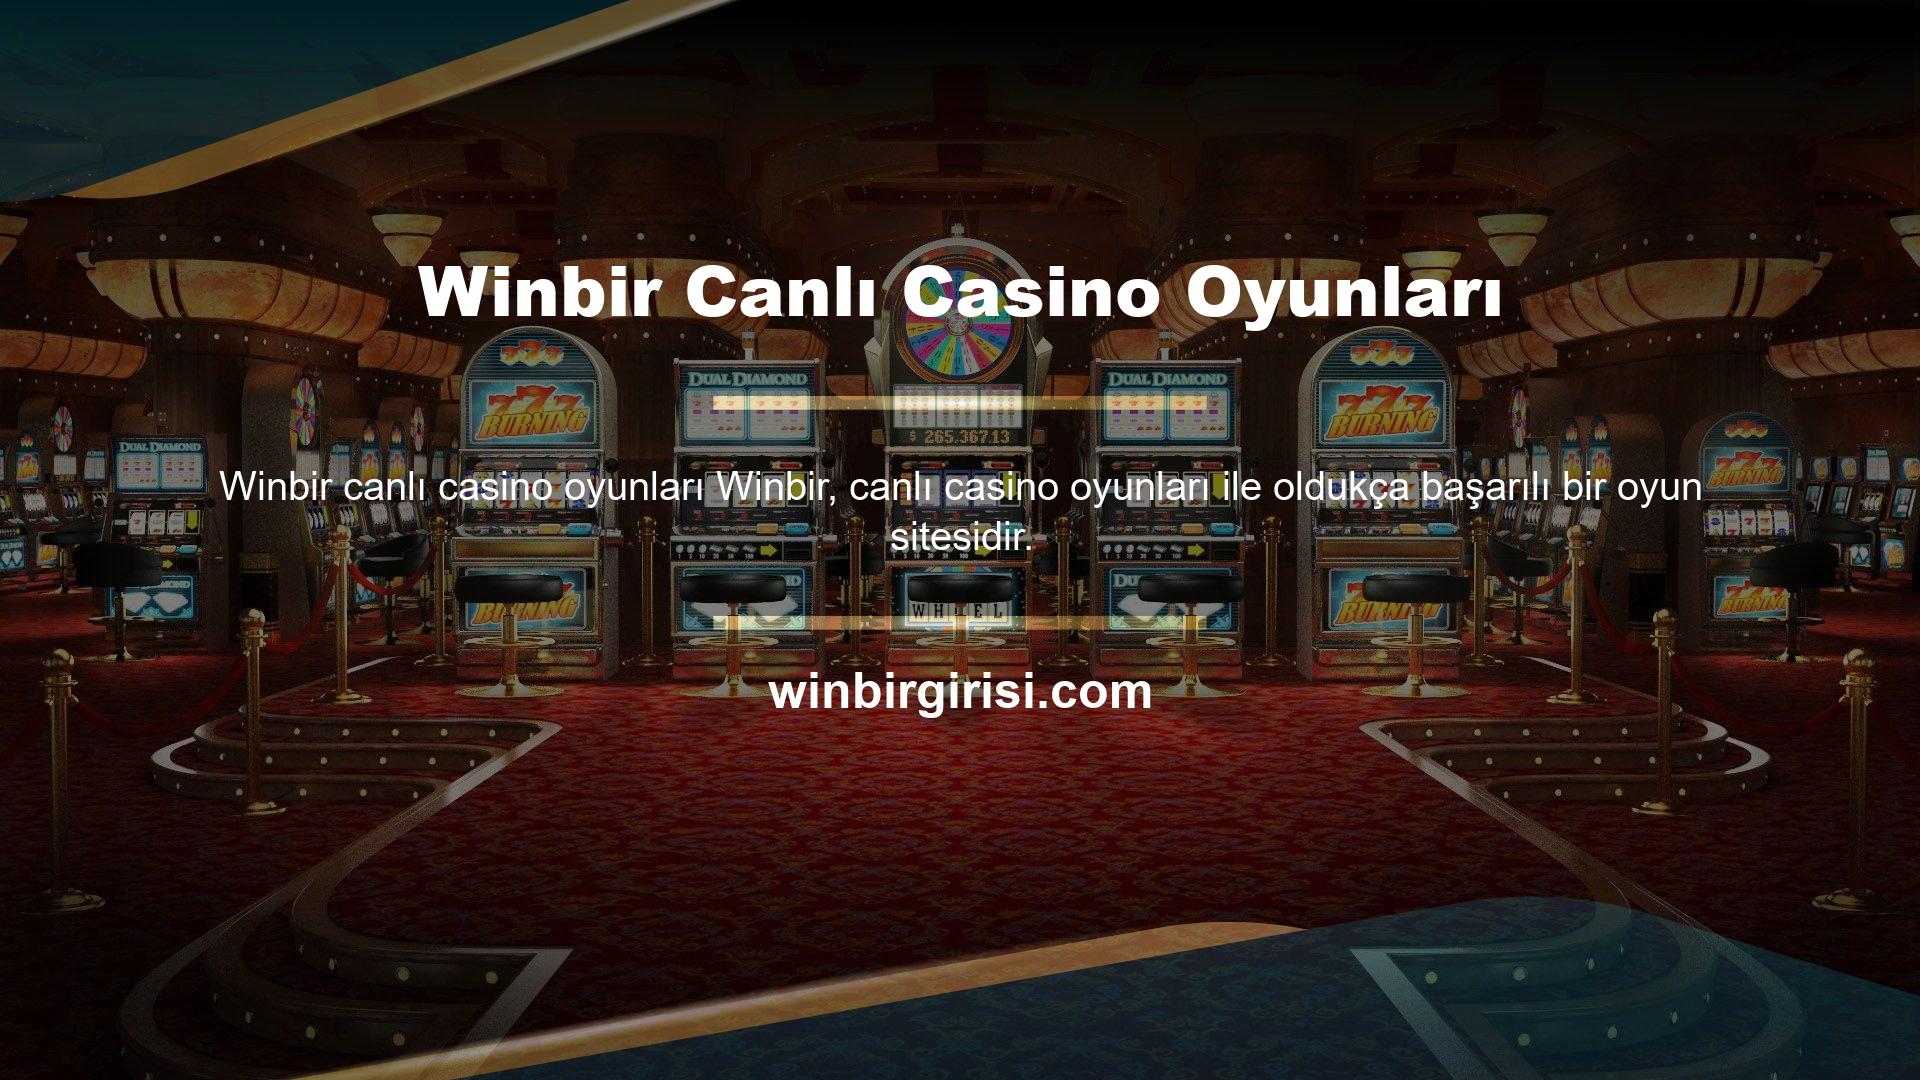 Winbir Canlı Casino Oyunları